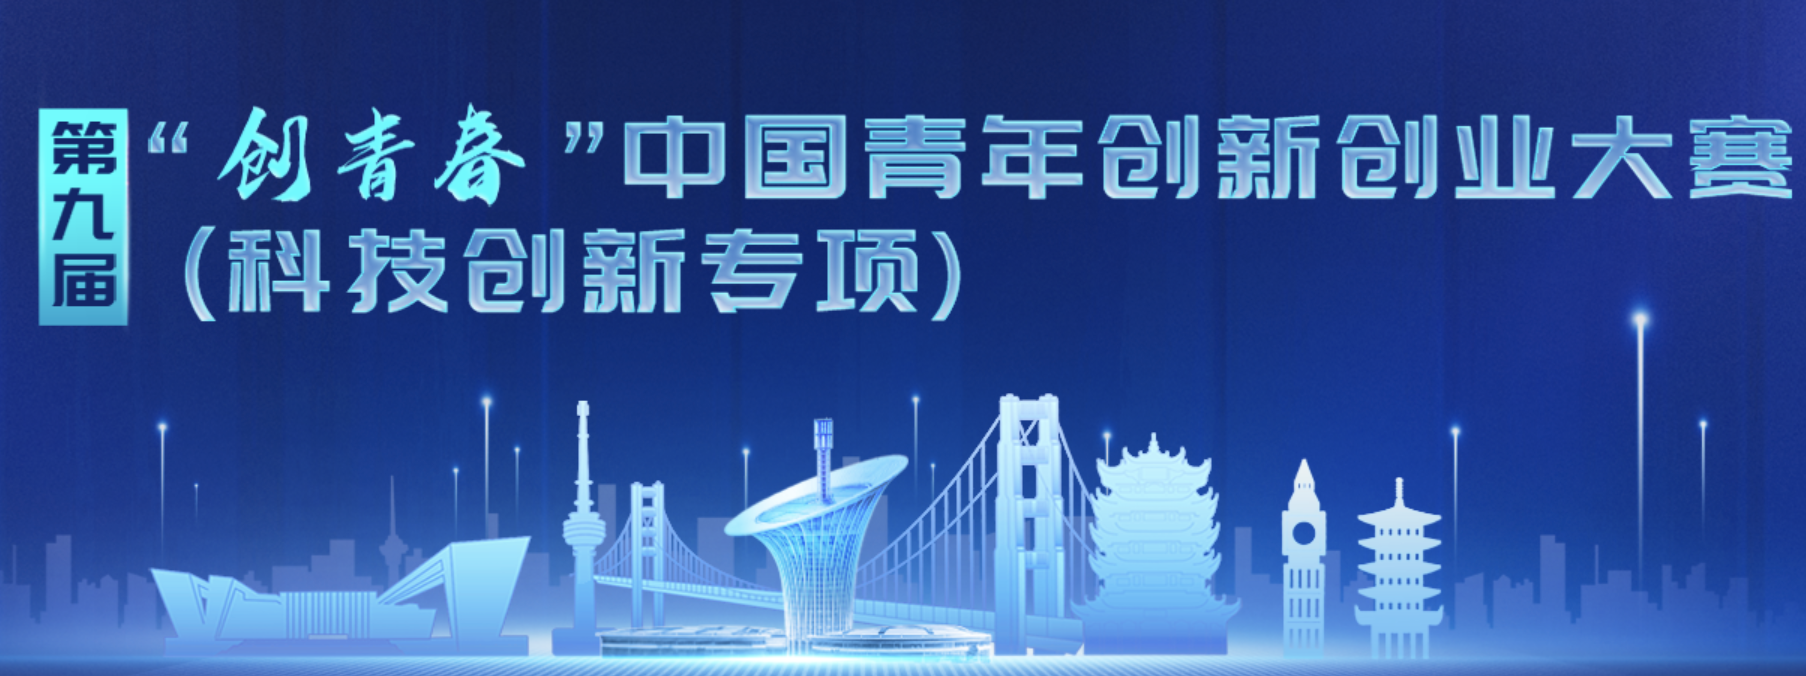 第九届“创青春”中国青年创新创业大赛